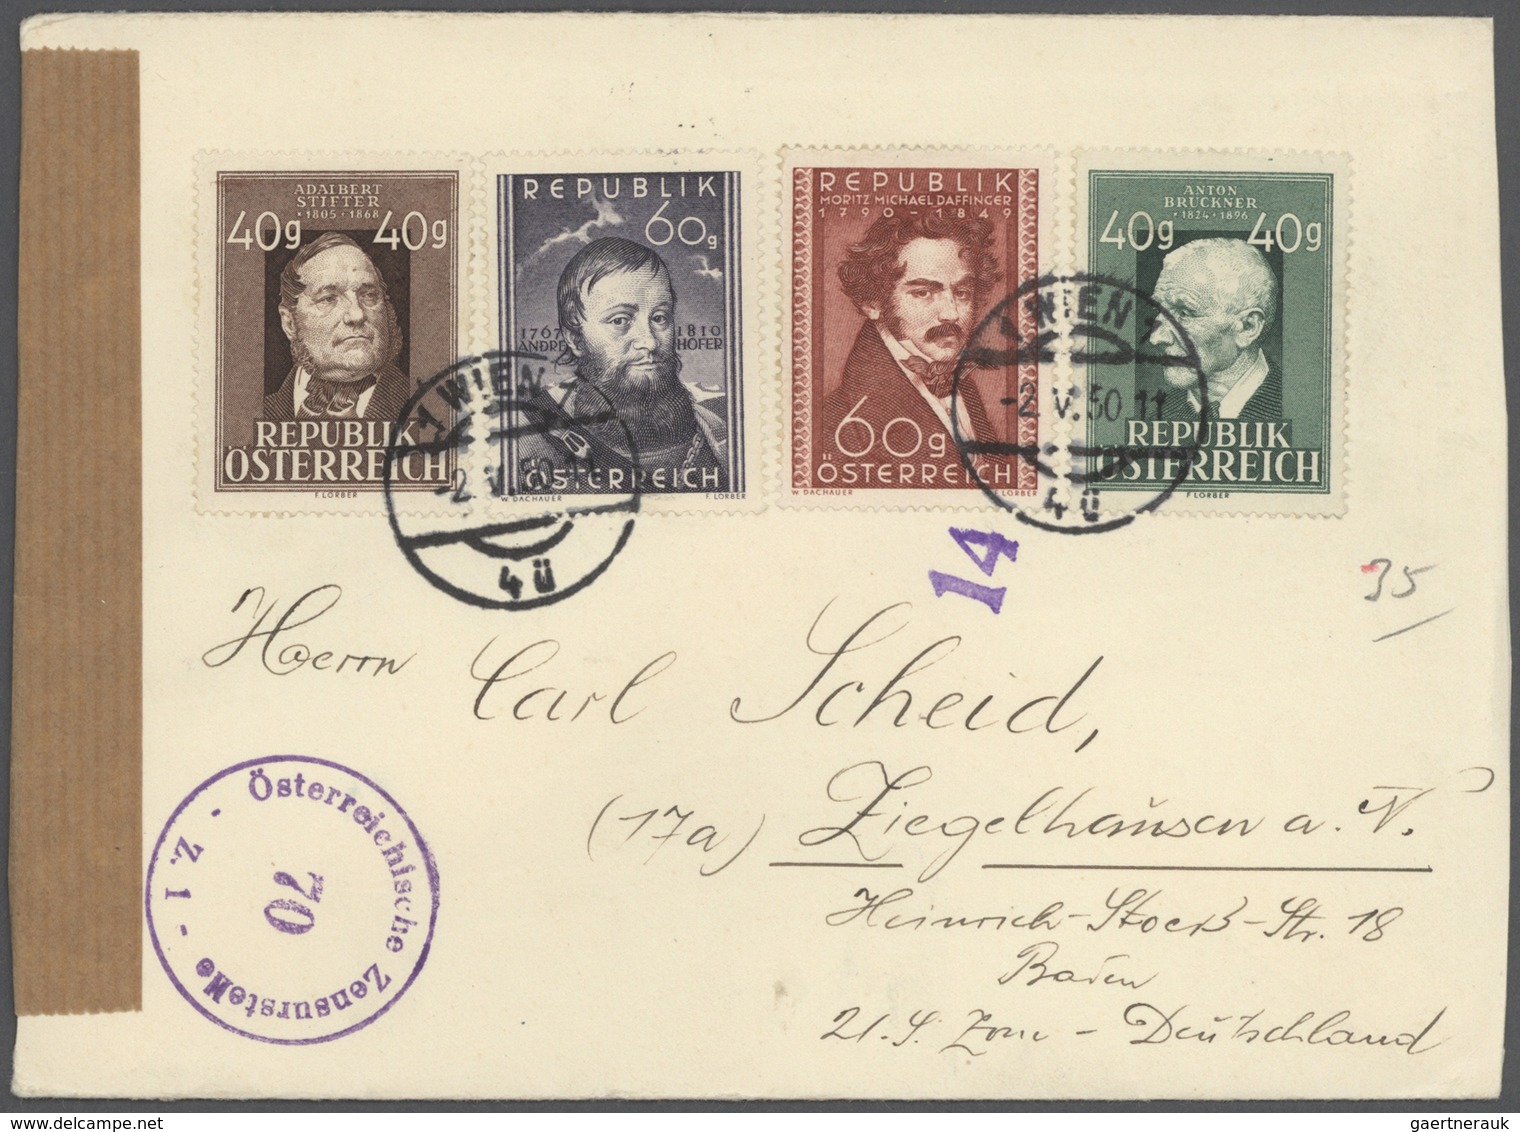 Br/GA Österreich: 1945/1959, Posten von ca. 100 Belegen mit vielen guten Stücken und schönen Frankaturen,